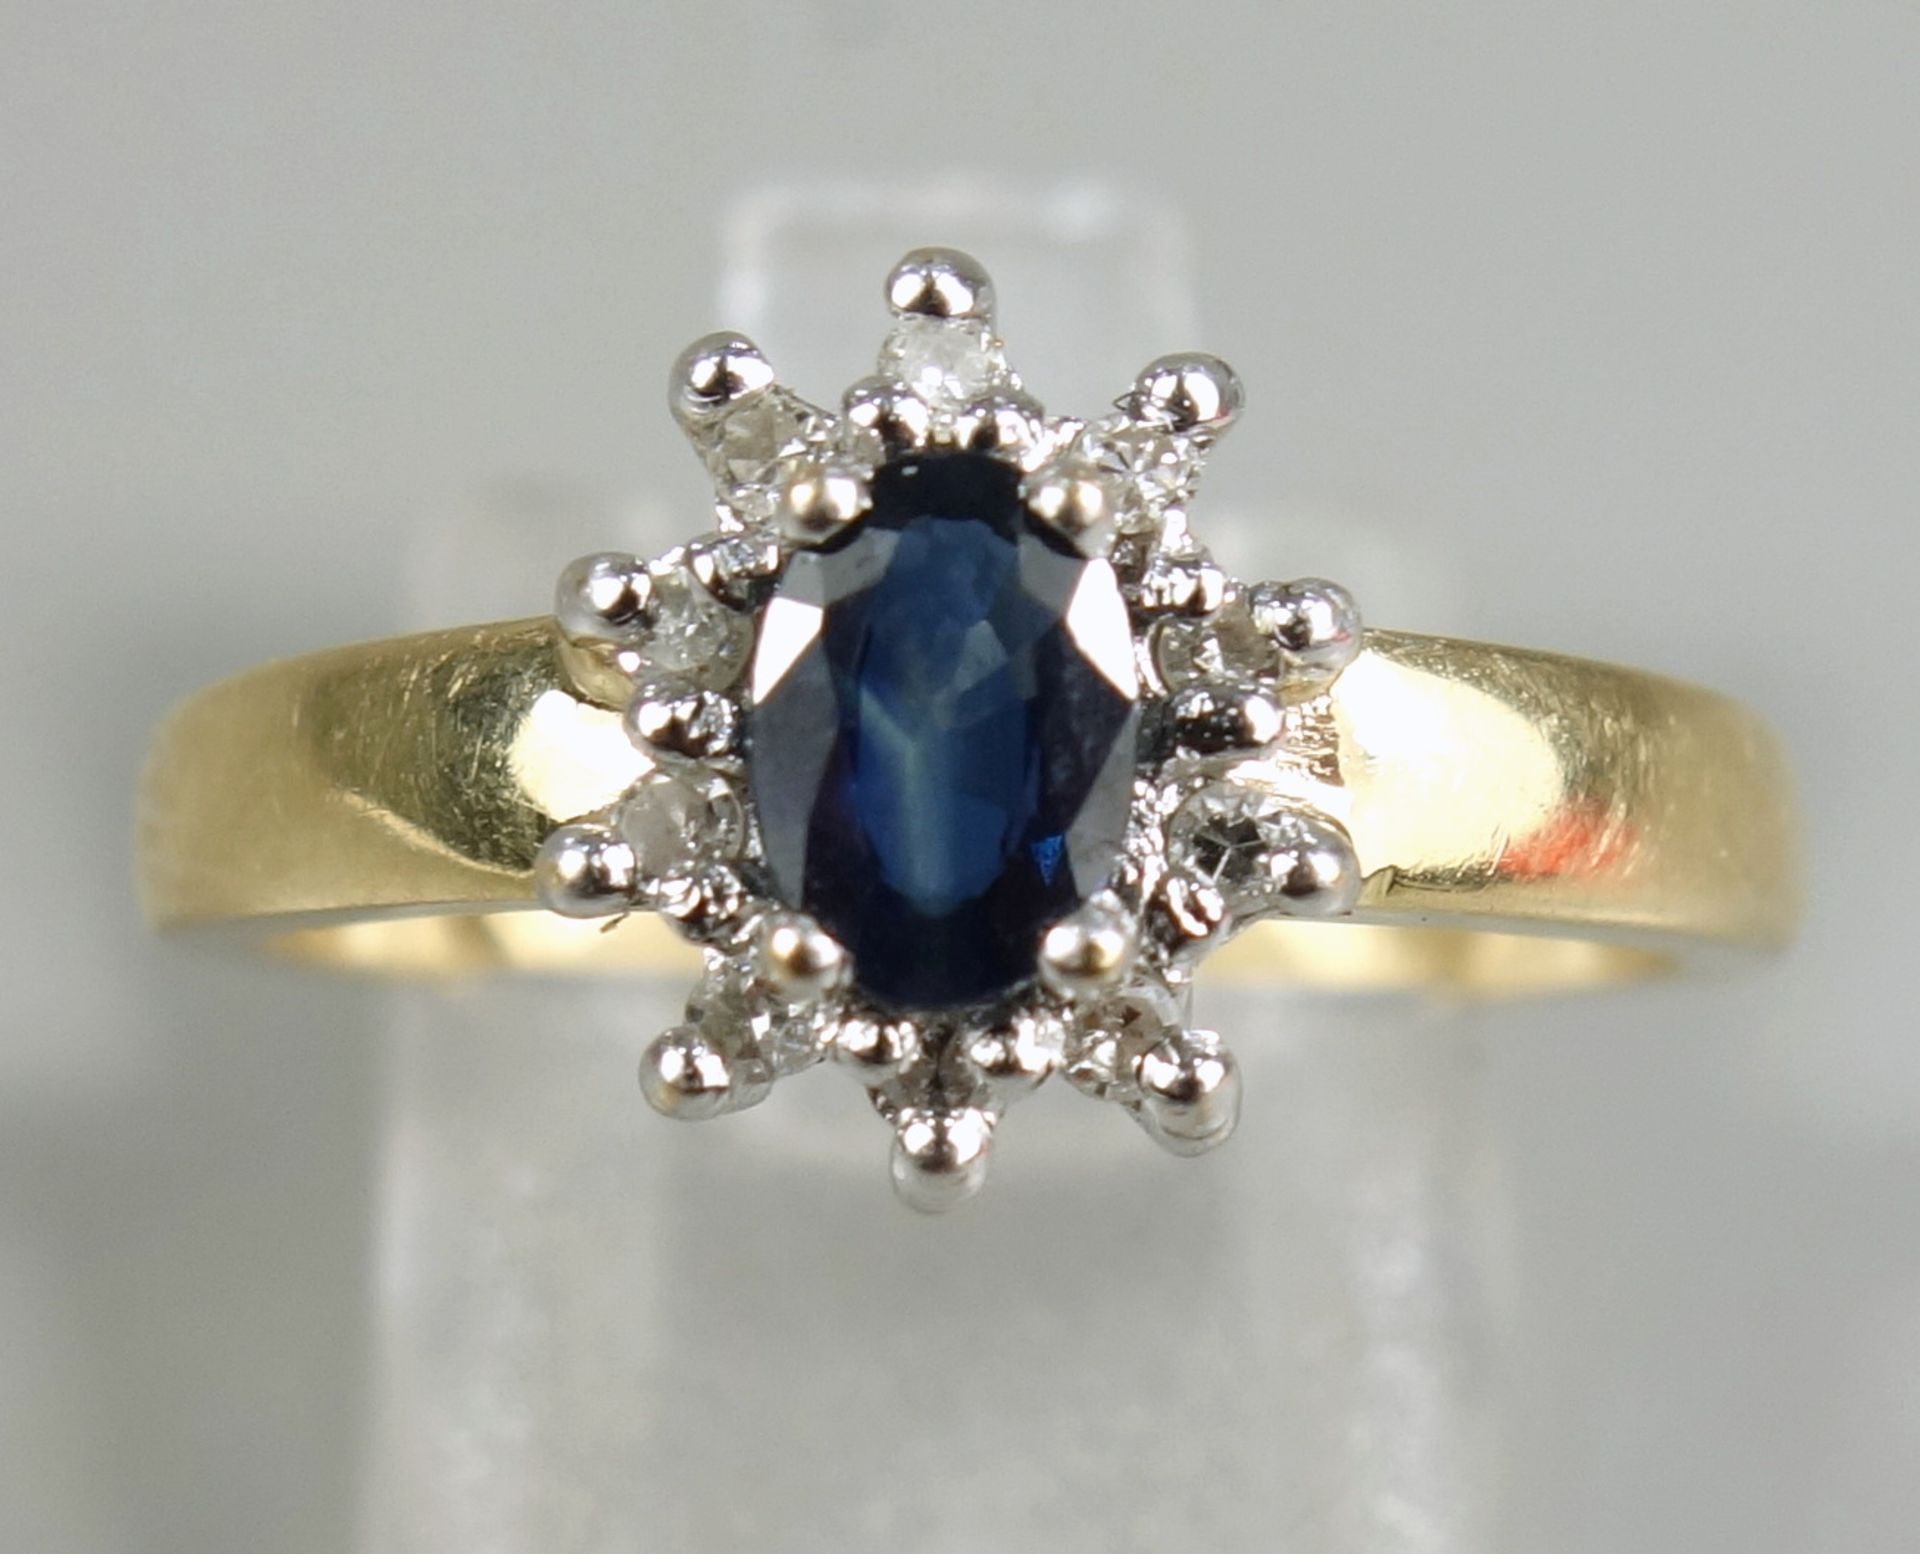 Saphir-Brillant-Ring, 585er Gold, Gew.3,74g, ovaler, facettierter Saphir, umrahmt von 10 Brillanten,